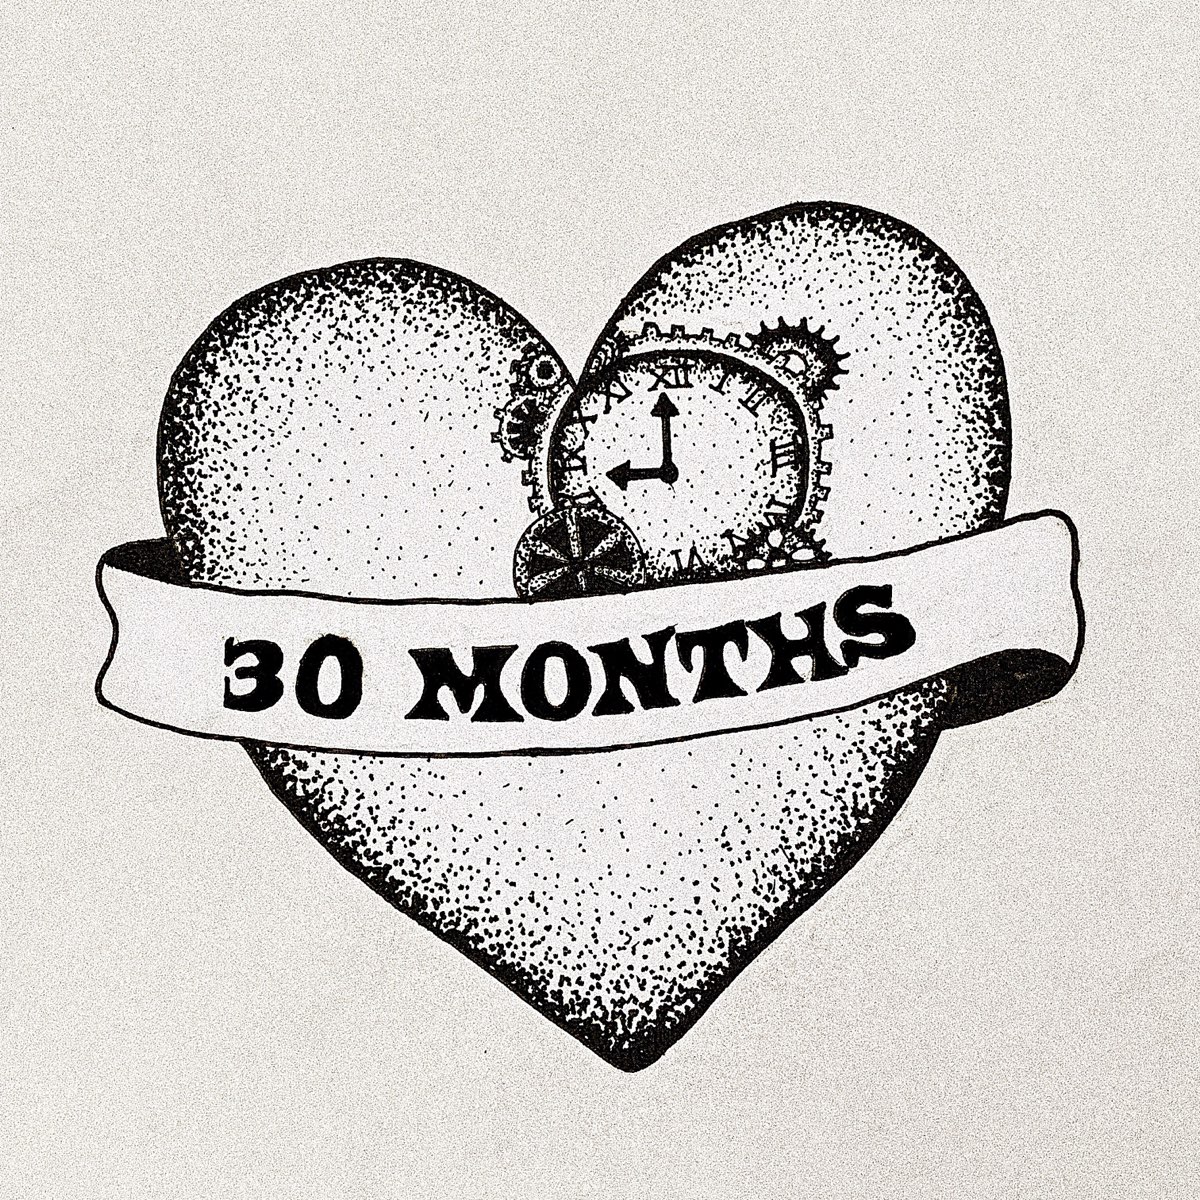 Month 30